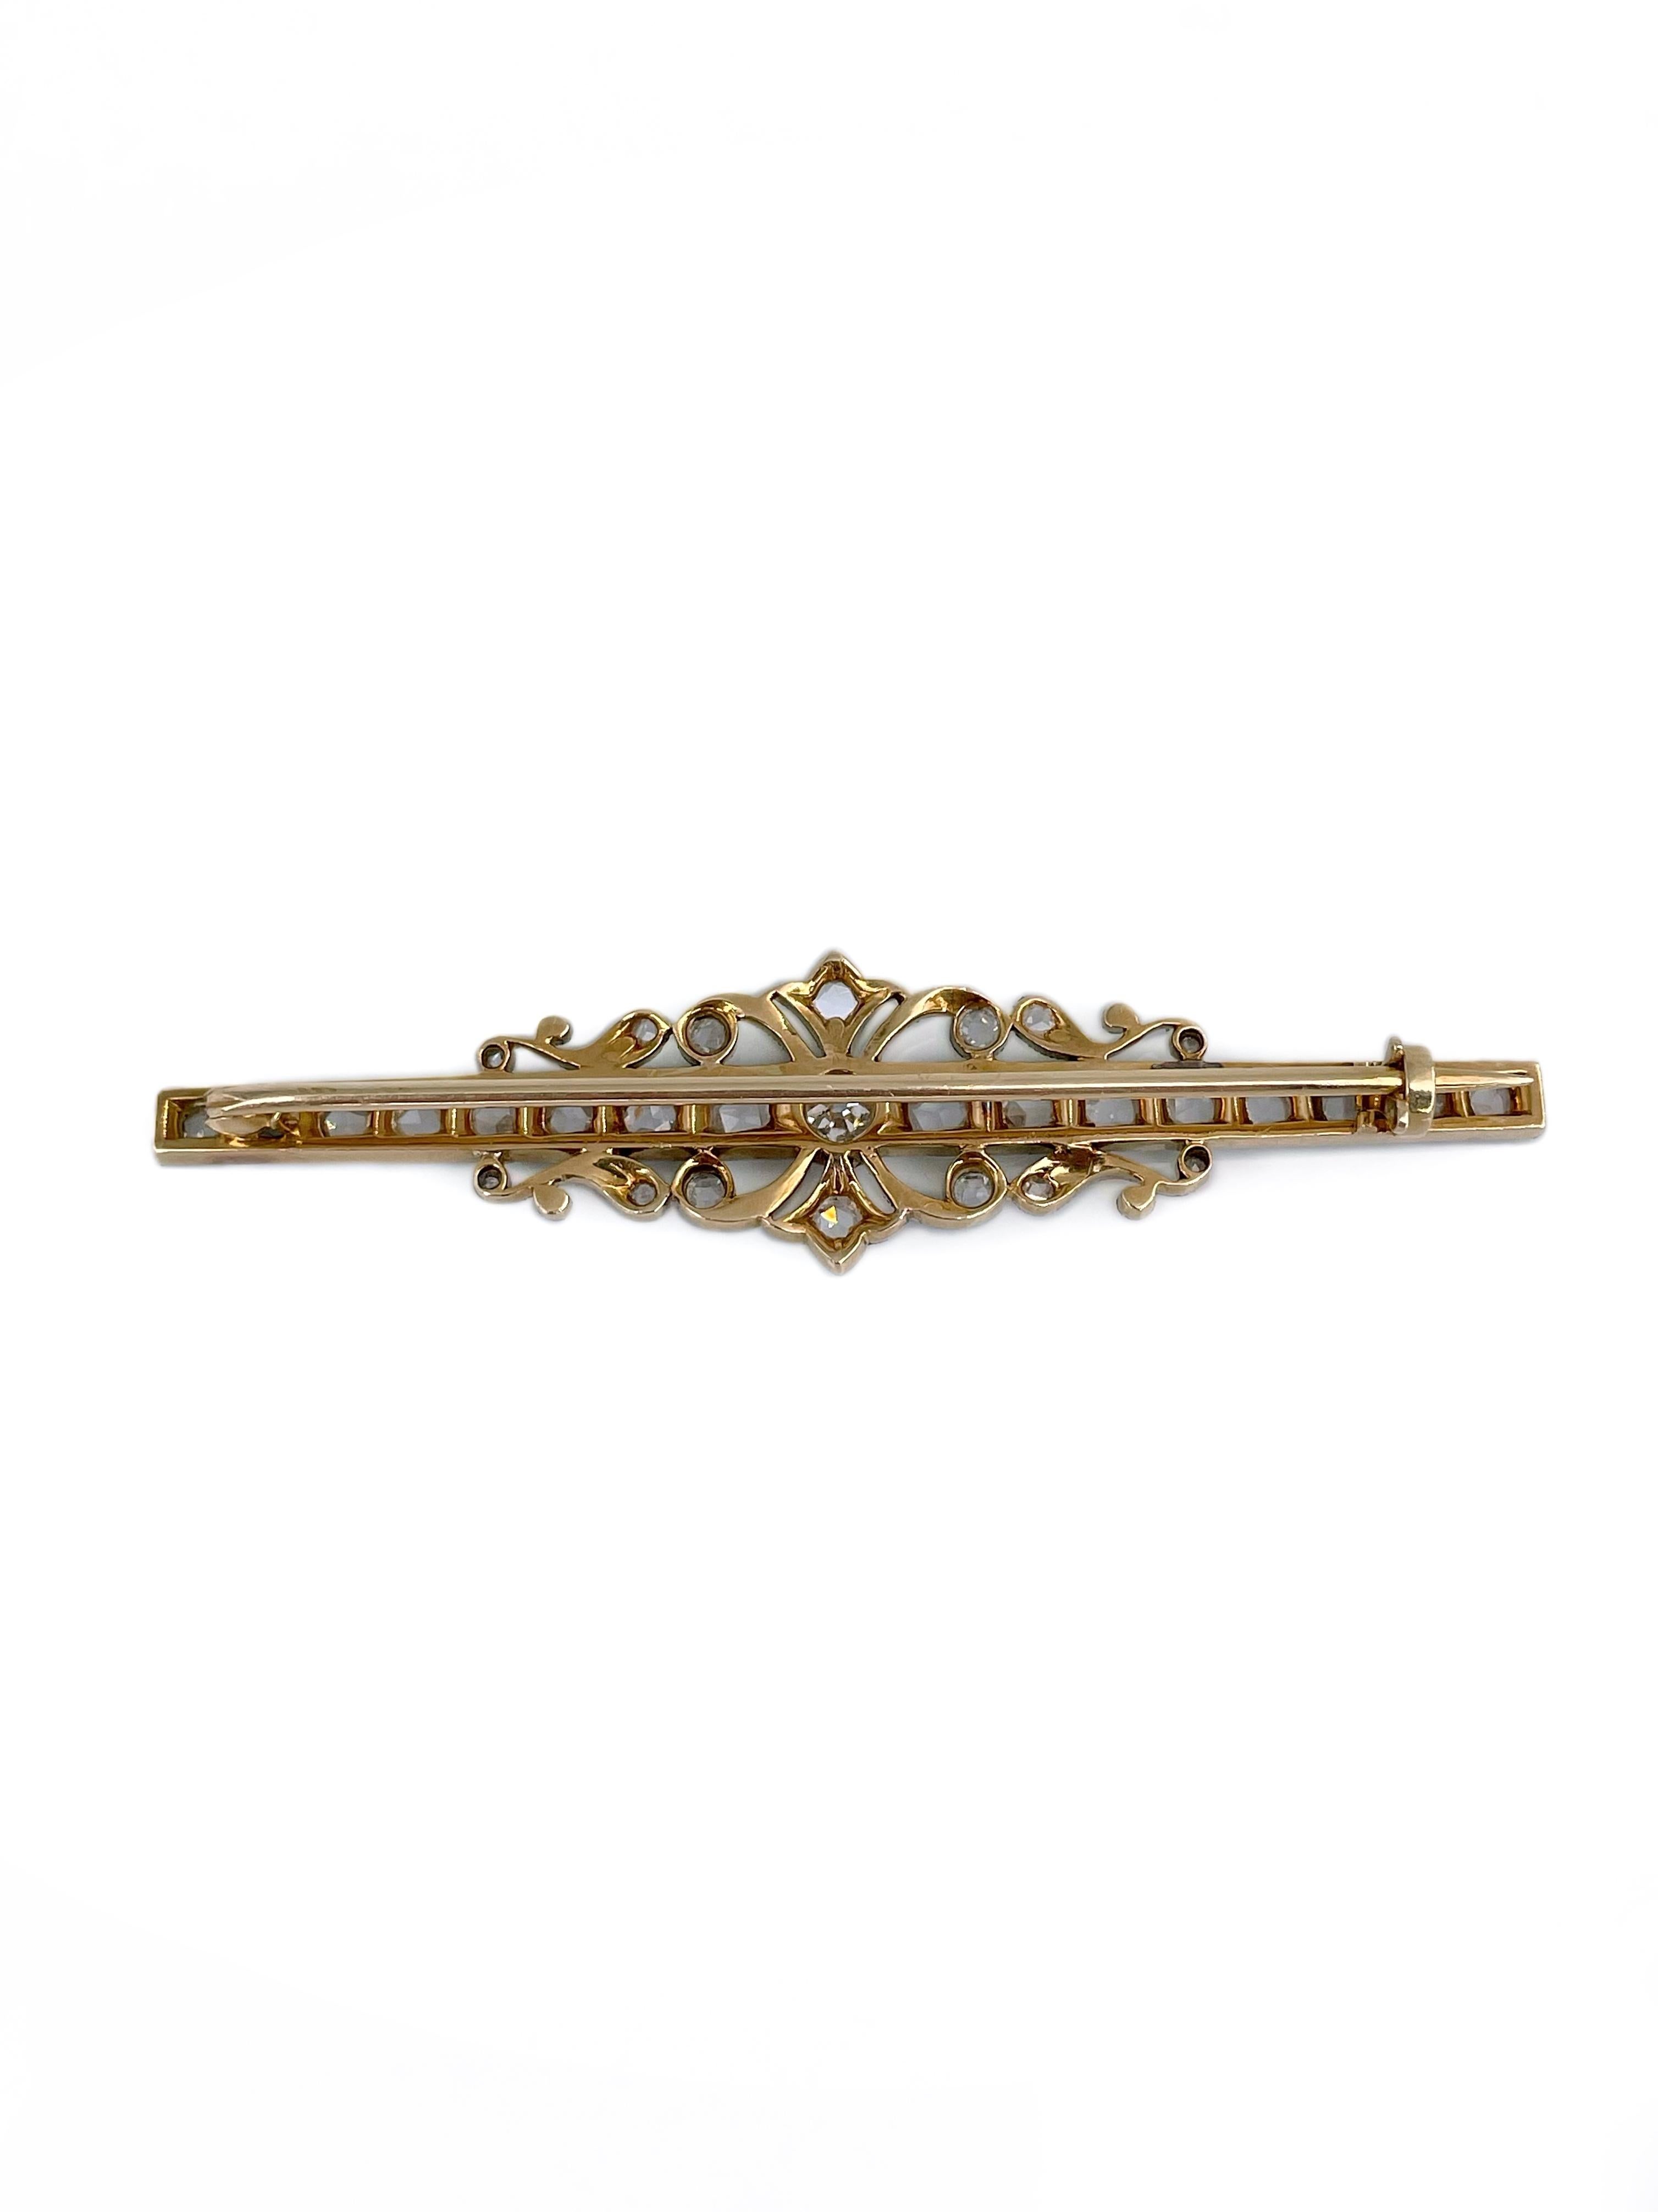 Edwardian 14 Karat Gold TW 1.92 Carat Old Cut Diamond Floral Design Bar Brooch In Good Condition For Sale In Vilnius, LT